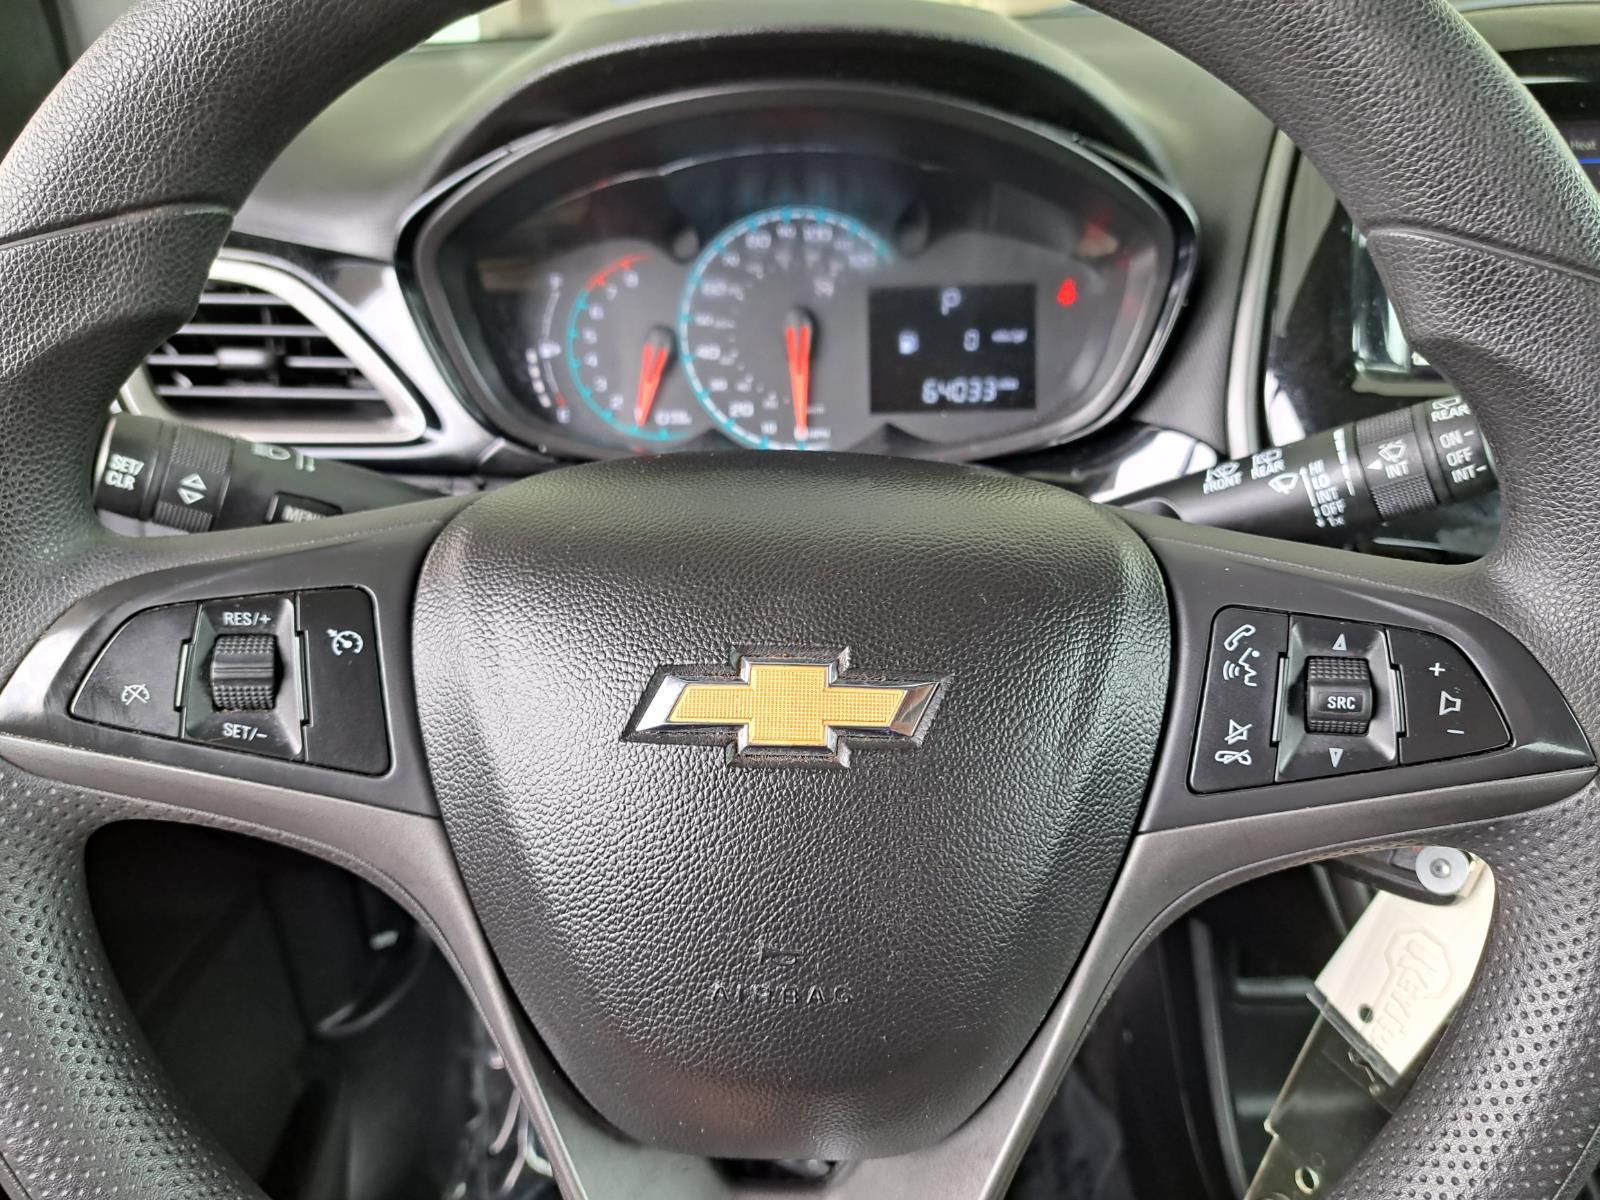 2021 Chevrolet Spark 1LT Hatchback 4 Dr. Front Wheel Drive 7